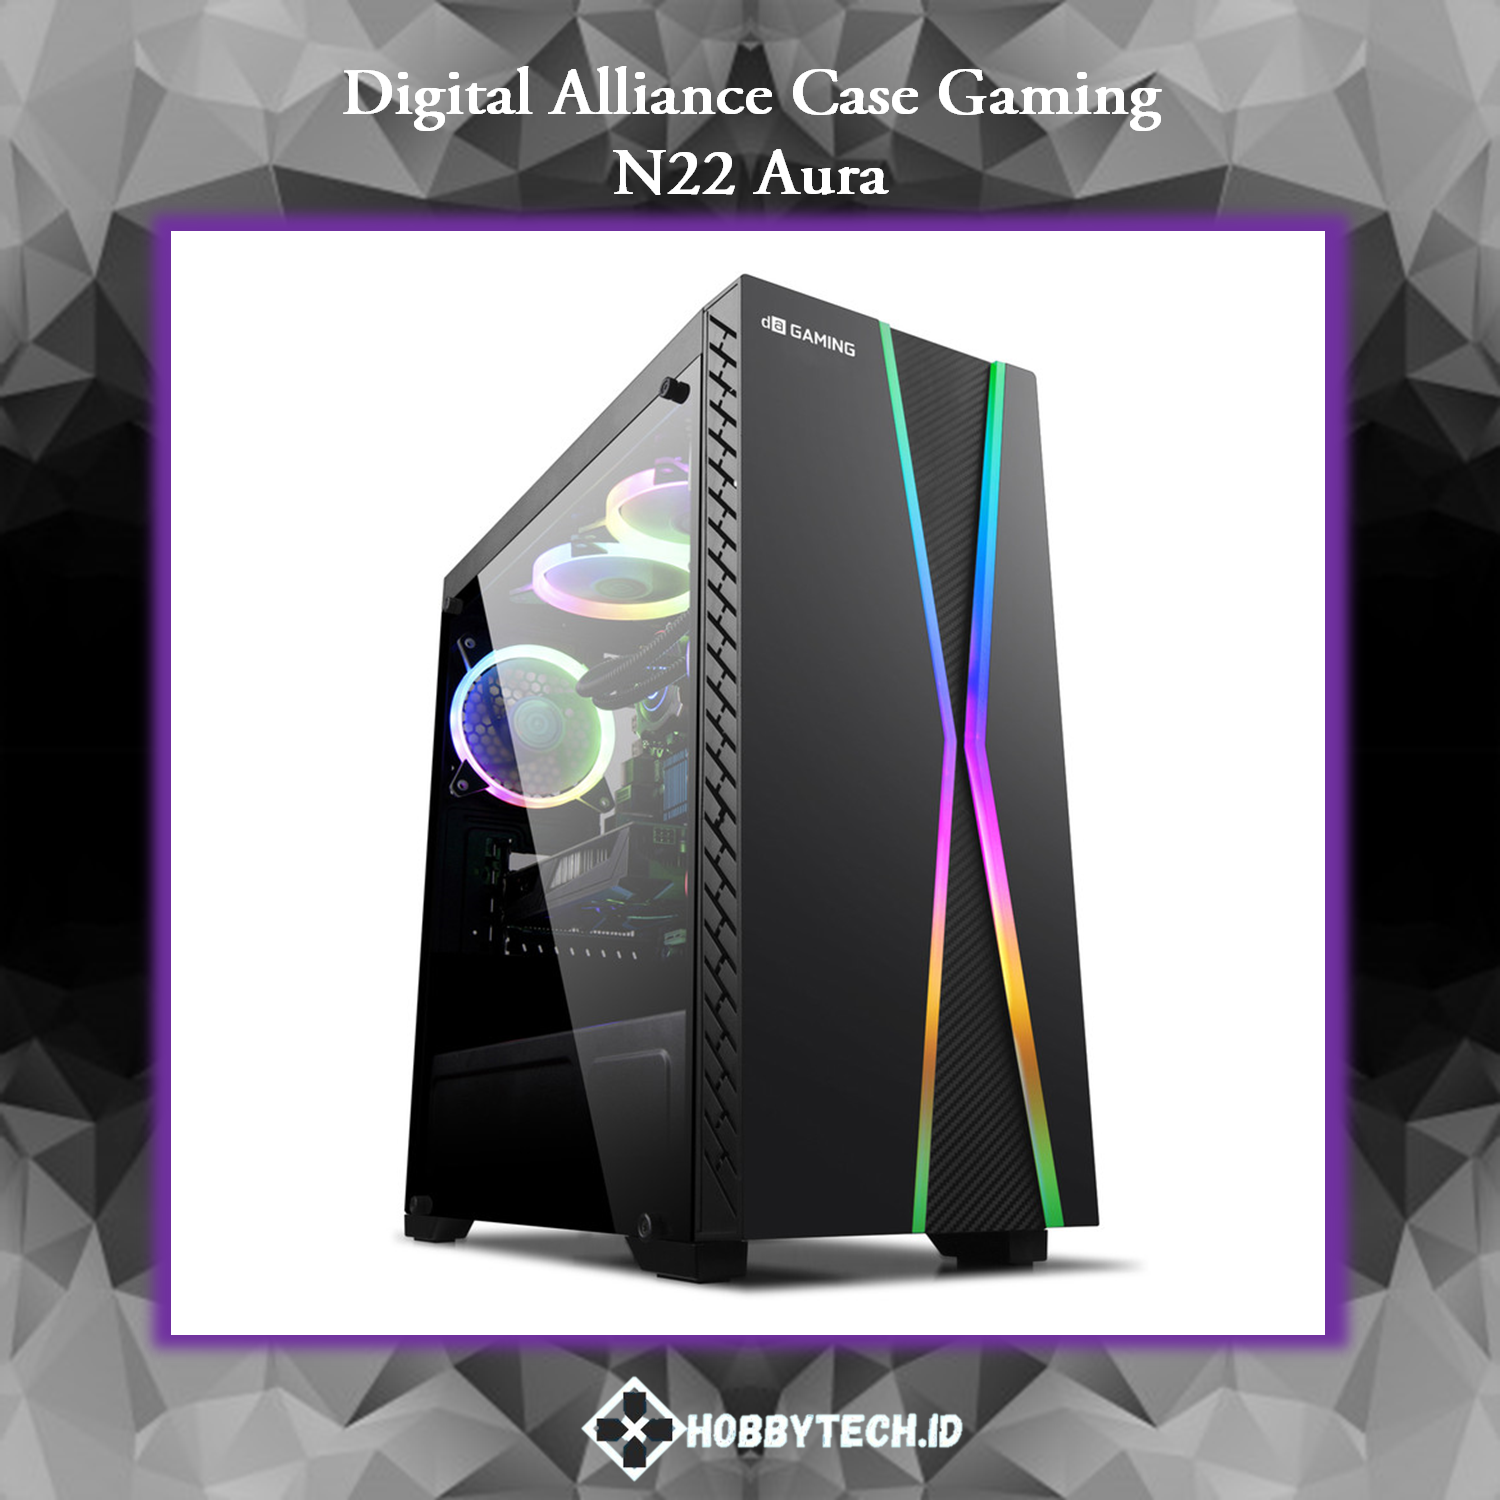 Digital Alliance Gaming Case N22 Aura